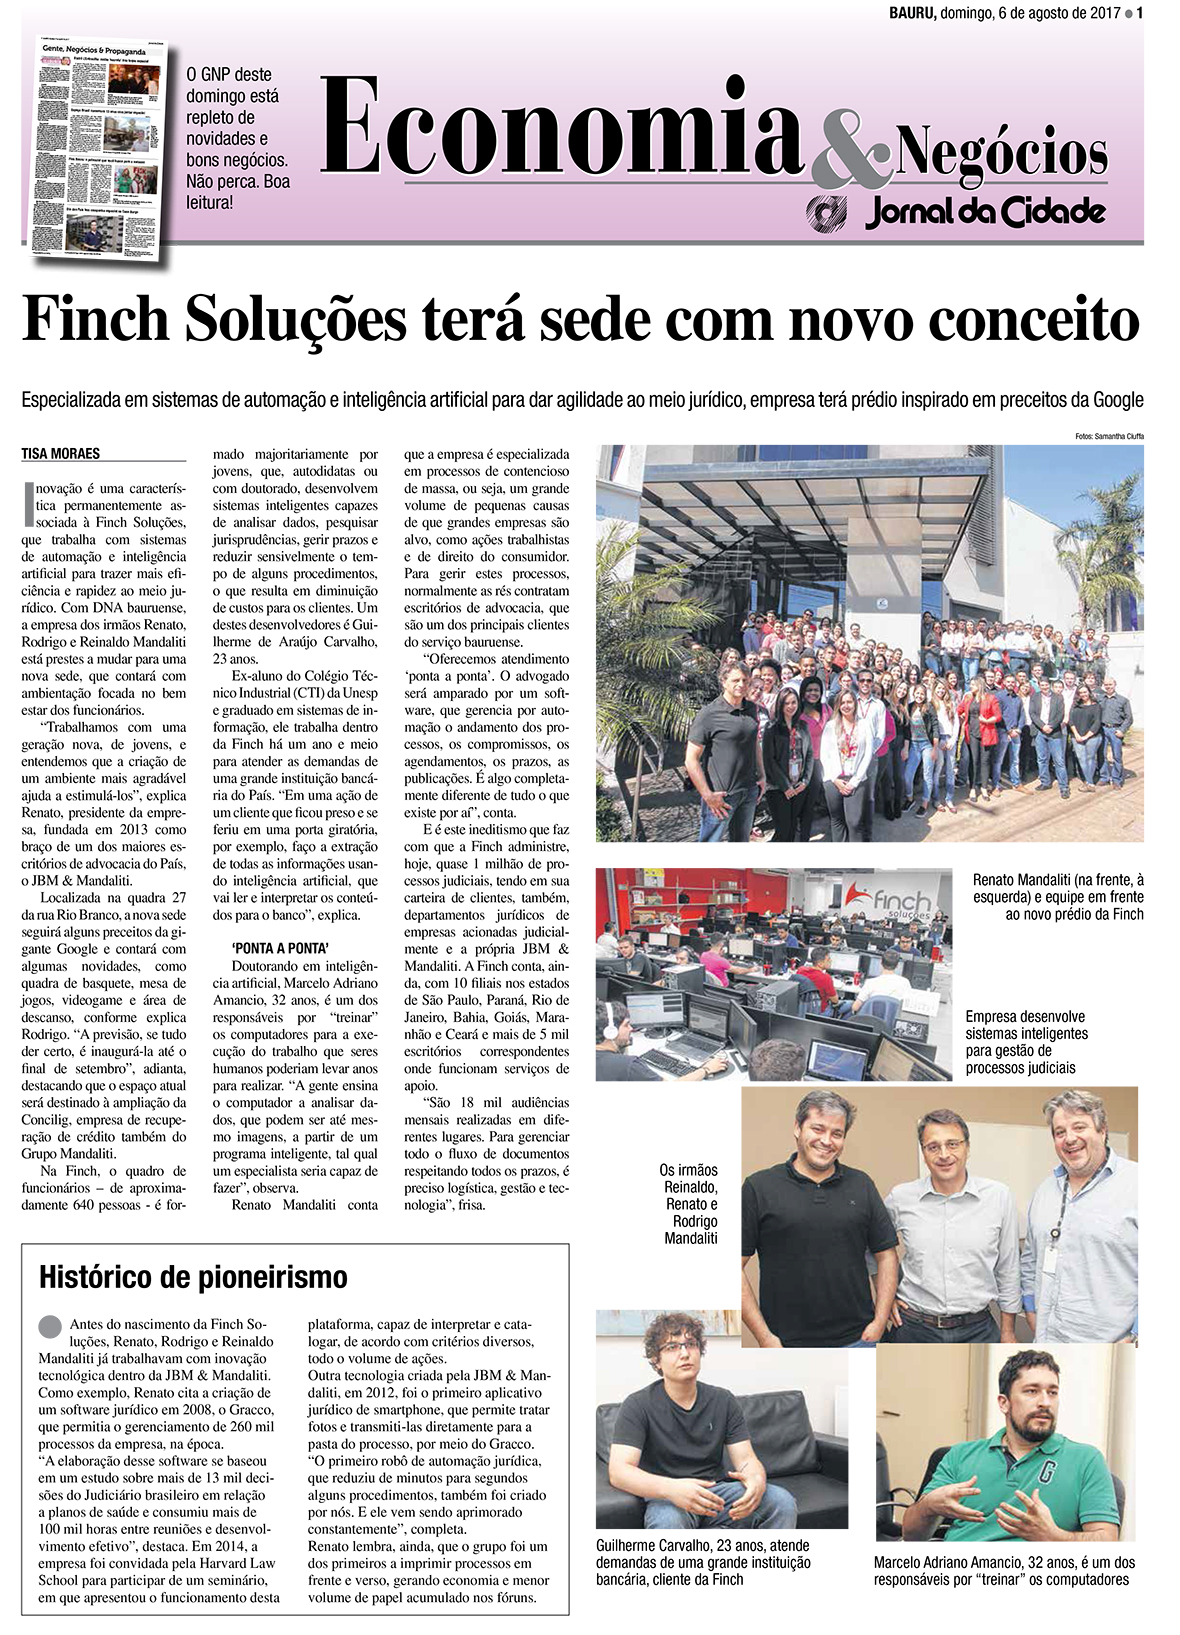 Nova sede da Finch Soluções é destaque no Jornal da Cidade - Bauru/SP